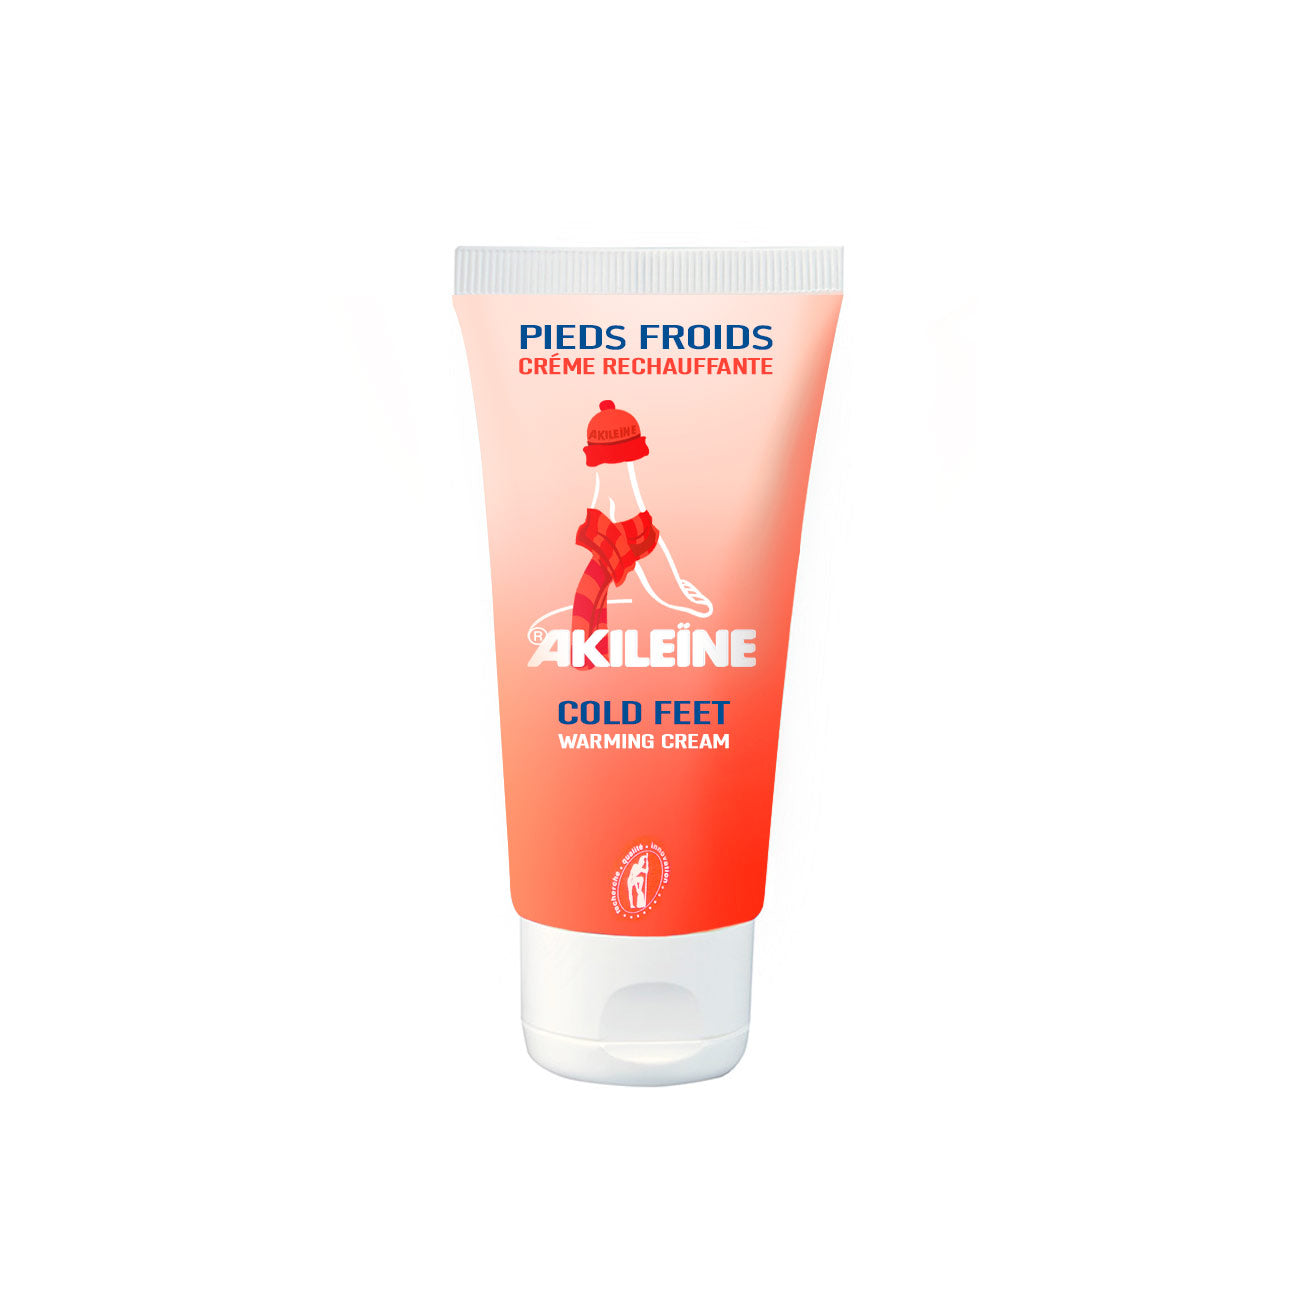 Akileine Cold Feet Warming Cream - MazenOnline